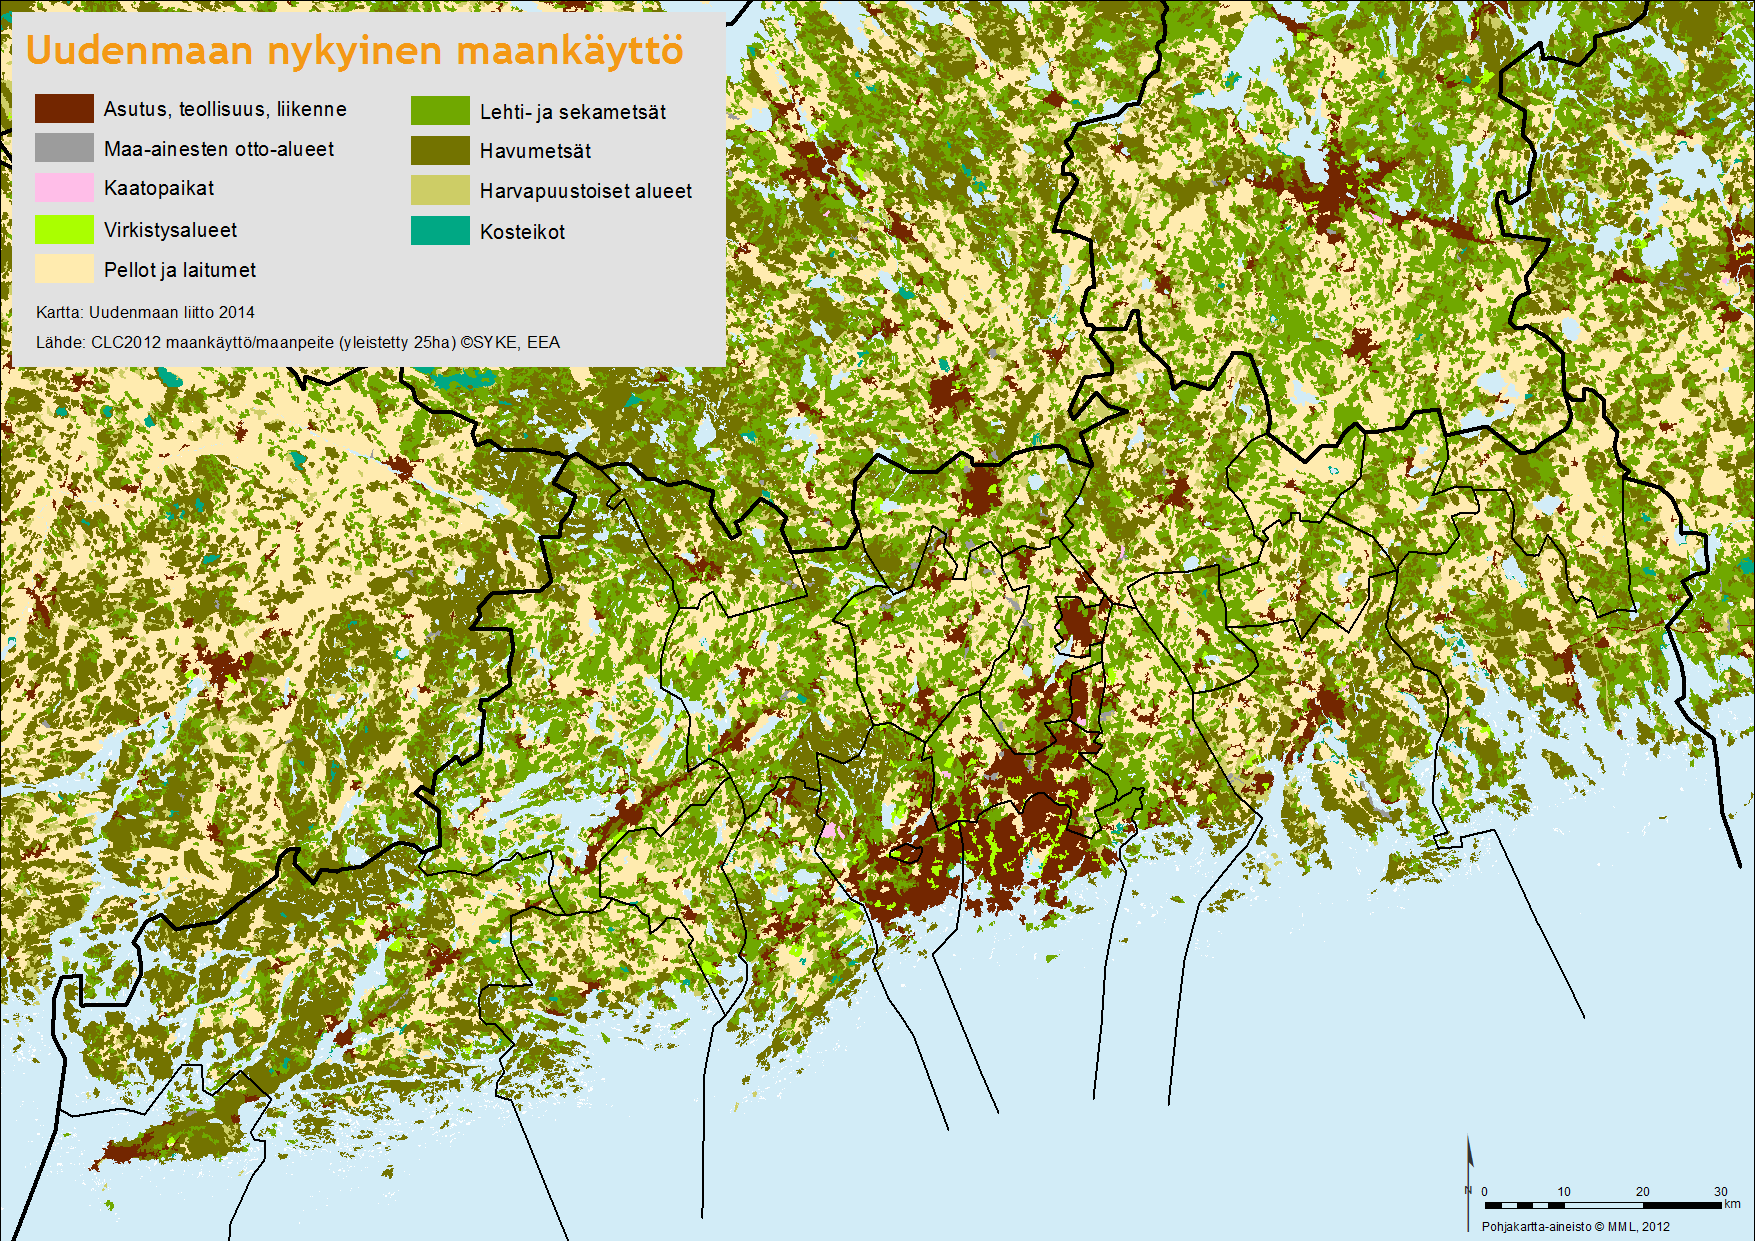 Kuva: Uudenmaan nykyinen maankäyttö. Tiiviimmin rakentuneen pääkaupunkiseudun läheisyydessä sijaitsee muutamia laajoja metsiä kuten Nuuksion ja Sipoonkorven alueet.